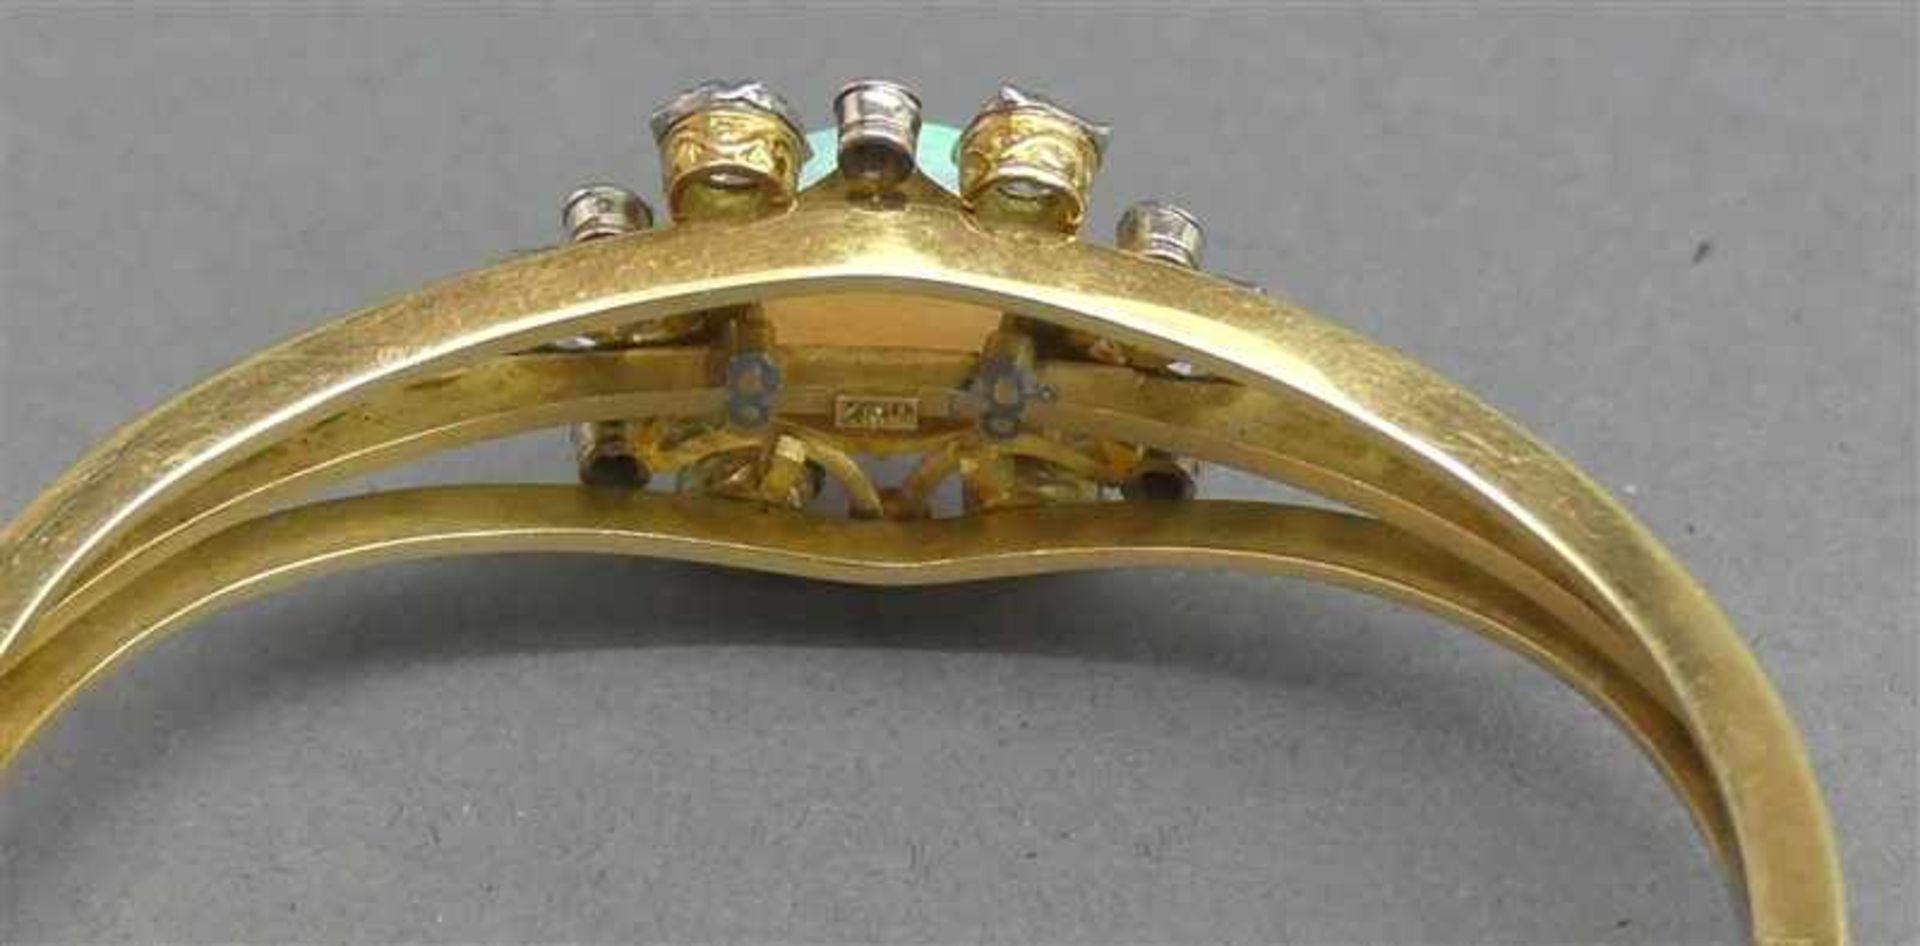 Schmuckgarnitur18 kt. Gelbgold, 1 Armreif, 1 Brosche, 2 Opale, zahlreiche Altschliffdiamanten, - Bild 5 aus 5